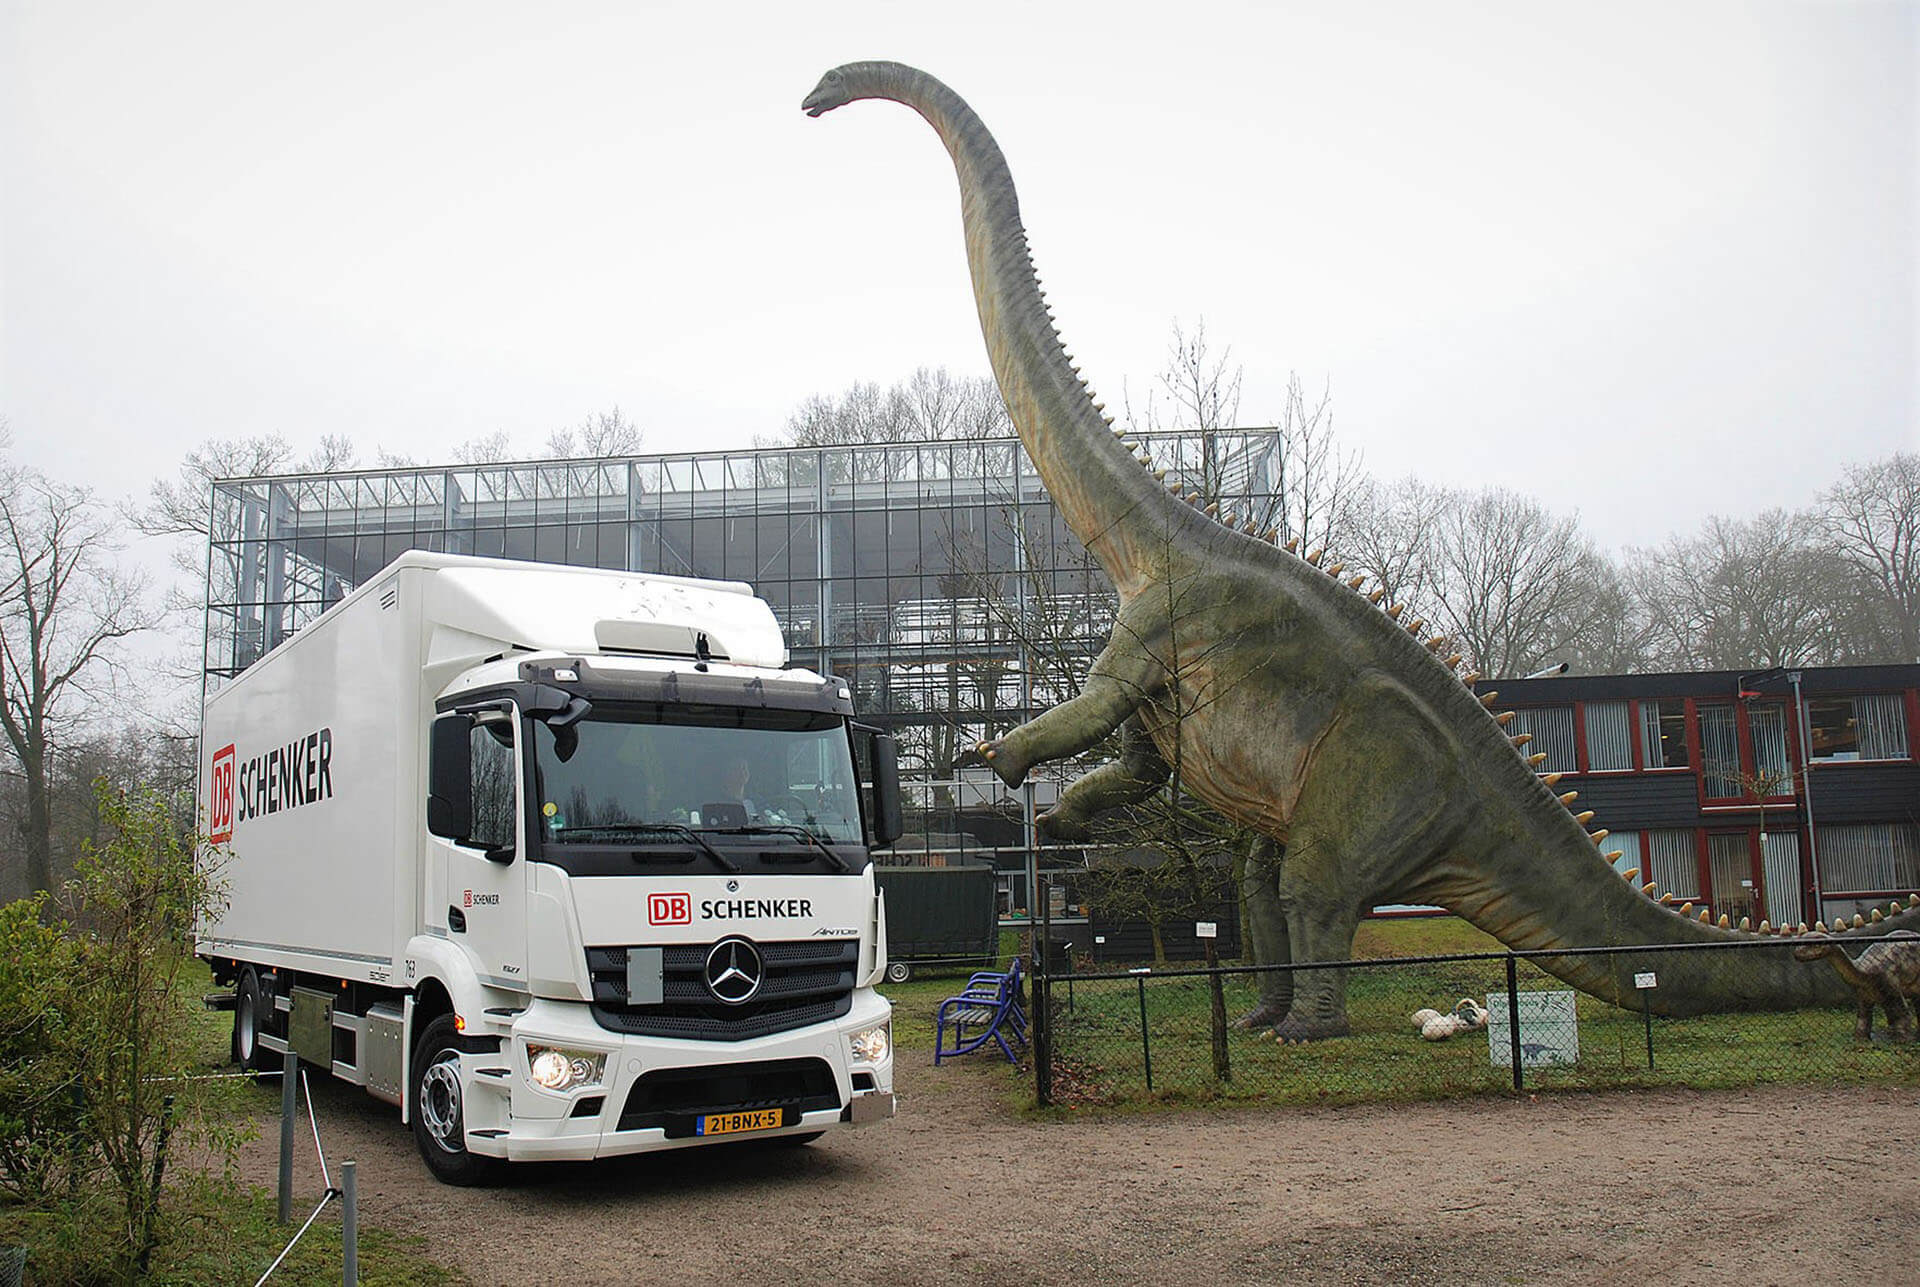 Wie ein großer Dinosaurier in einen LKW von DB Schenker passt